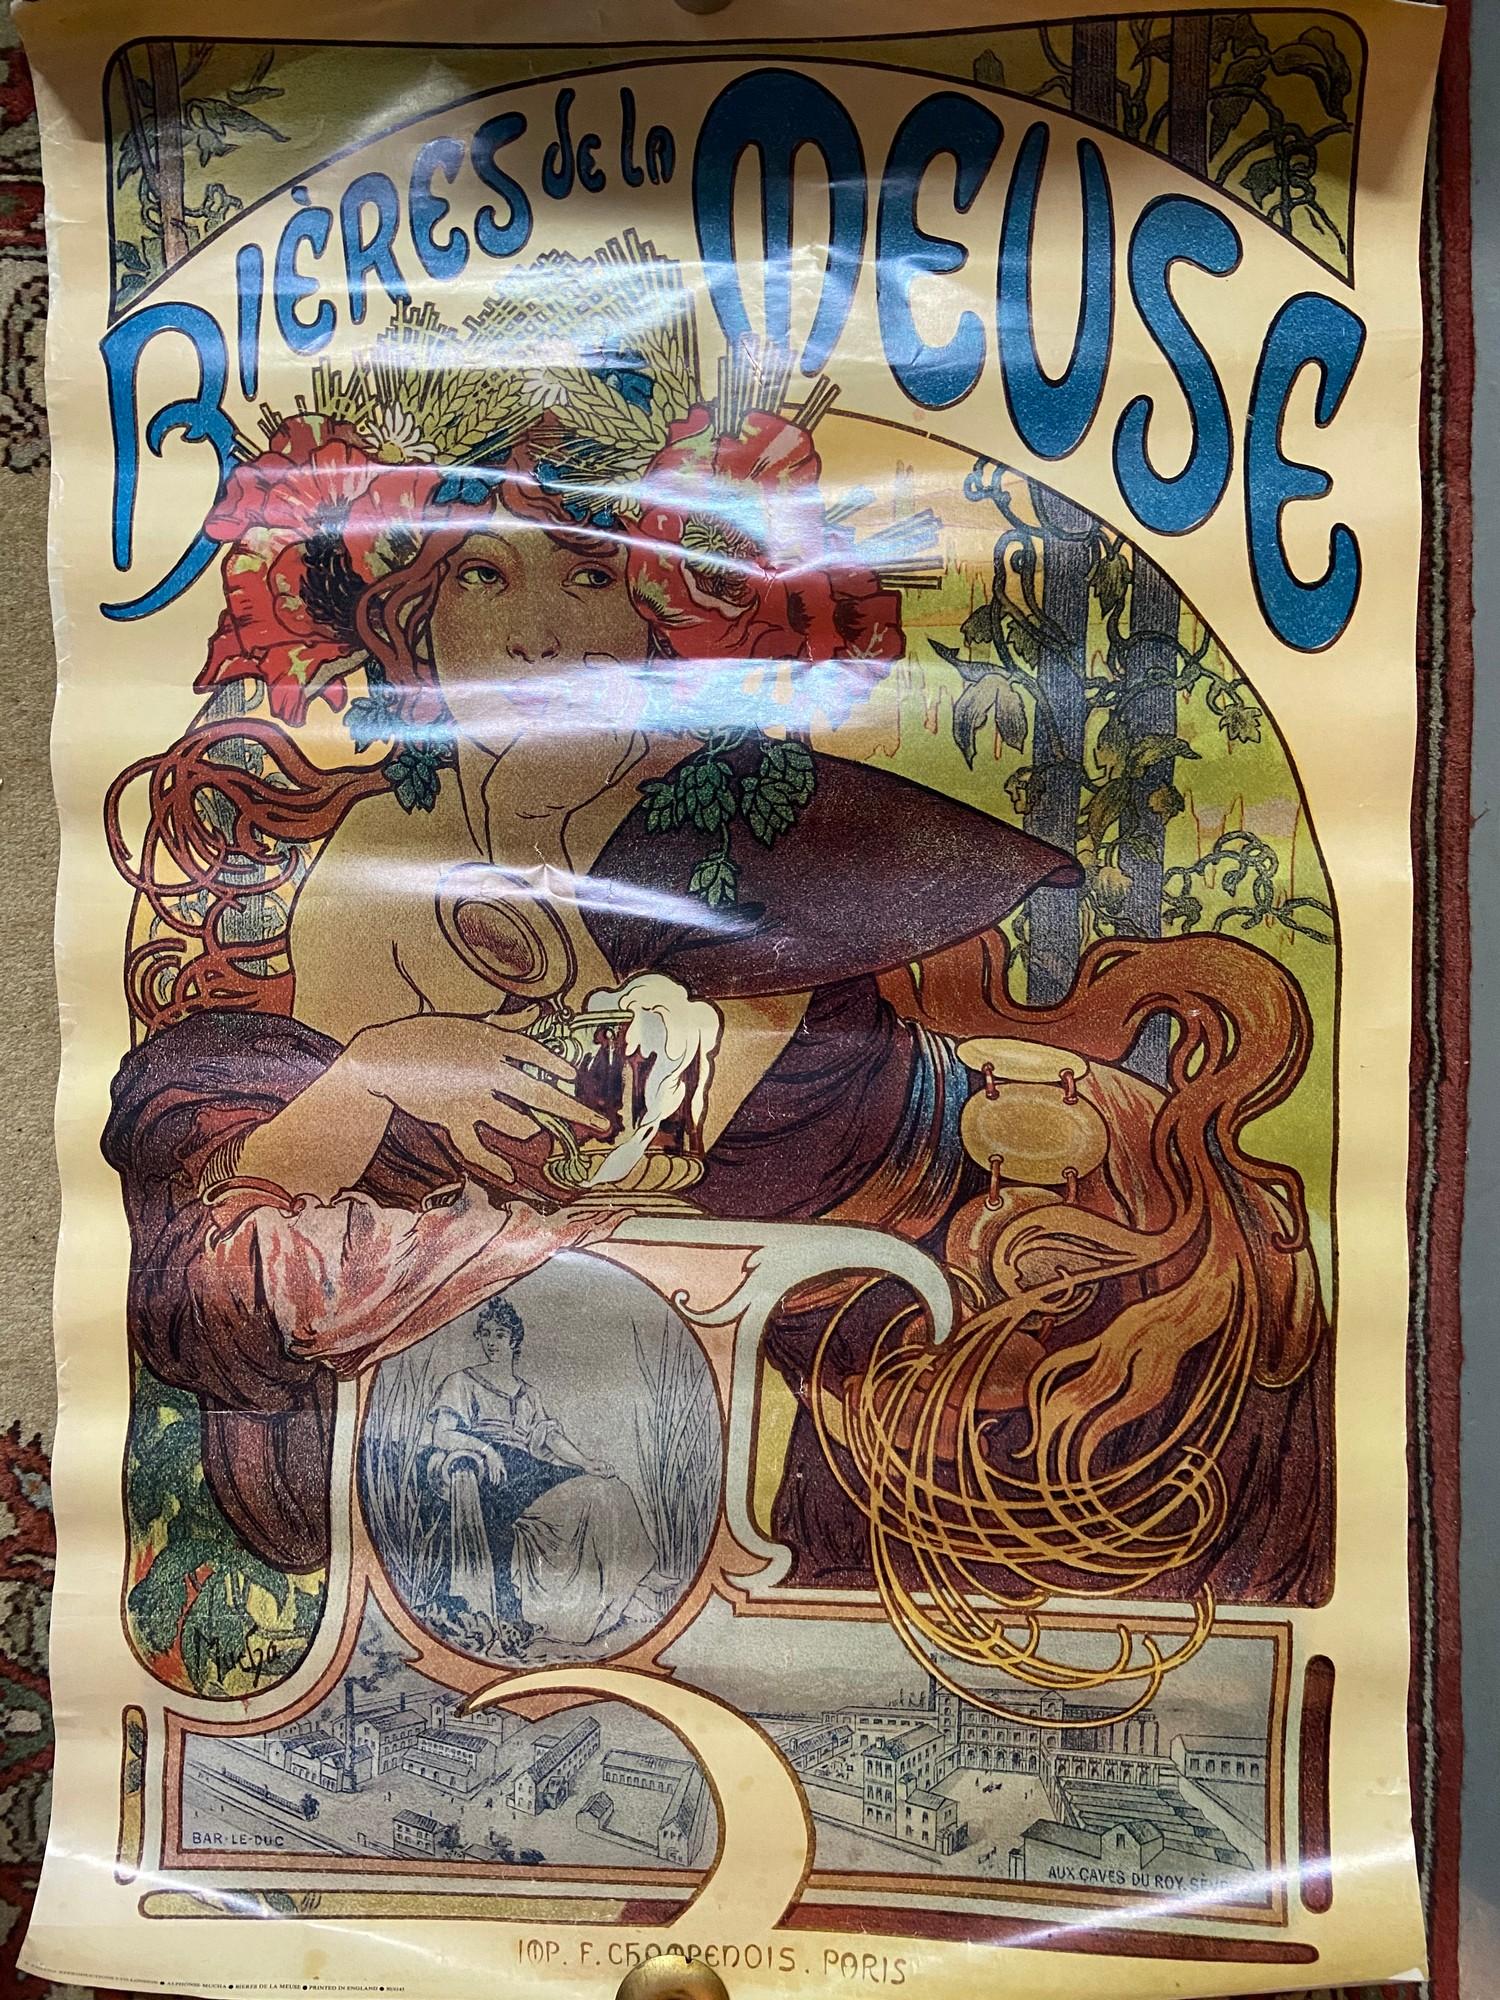 A Quantity of Art Nouveau posters.